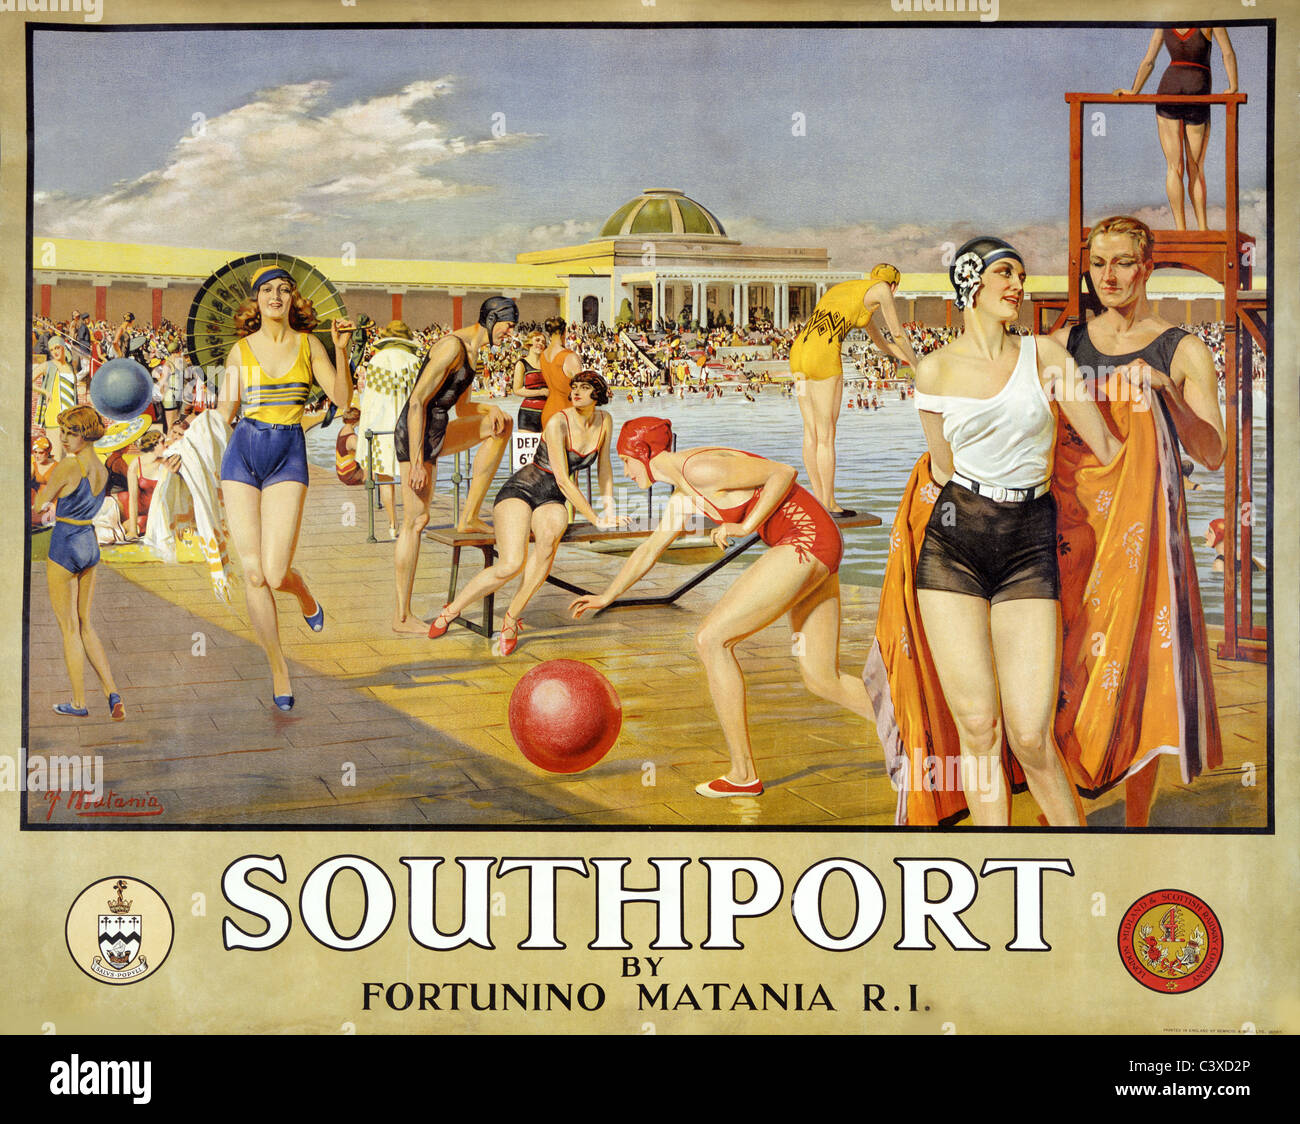 Par Fortunino Matania, Southport. Angleterre, début du 20e siècle Banque D'Images